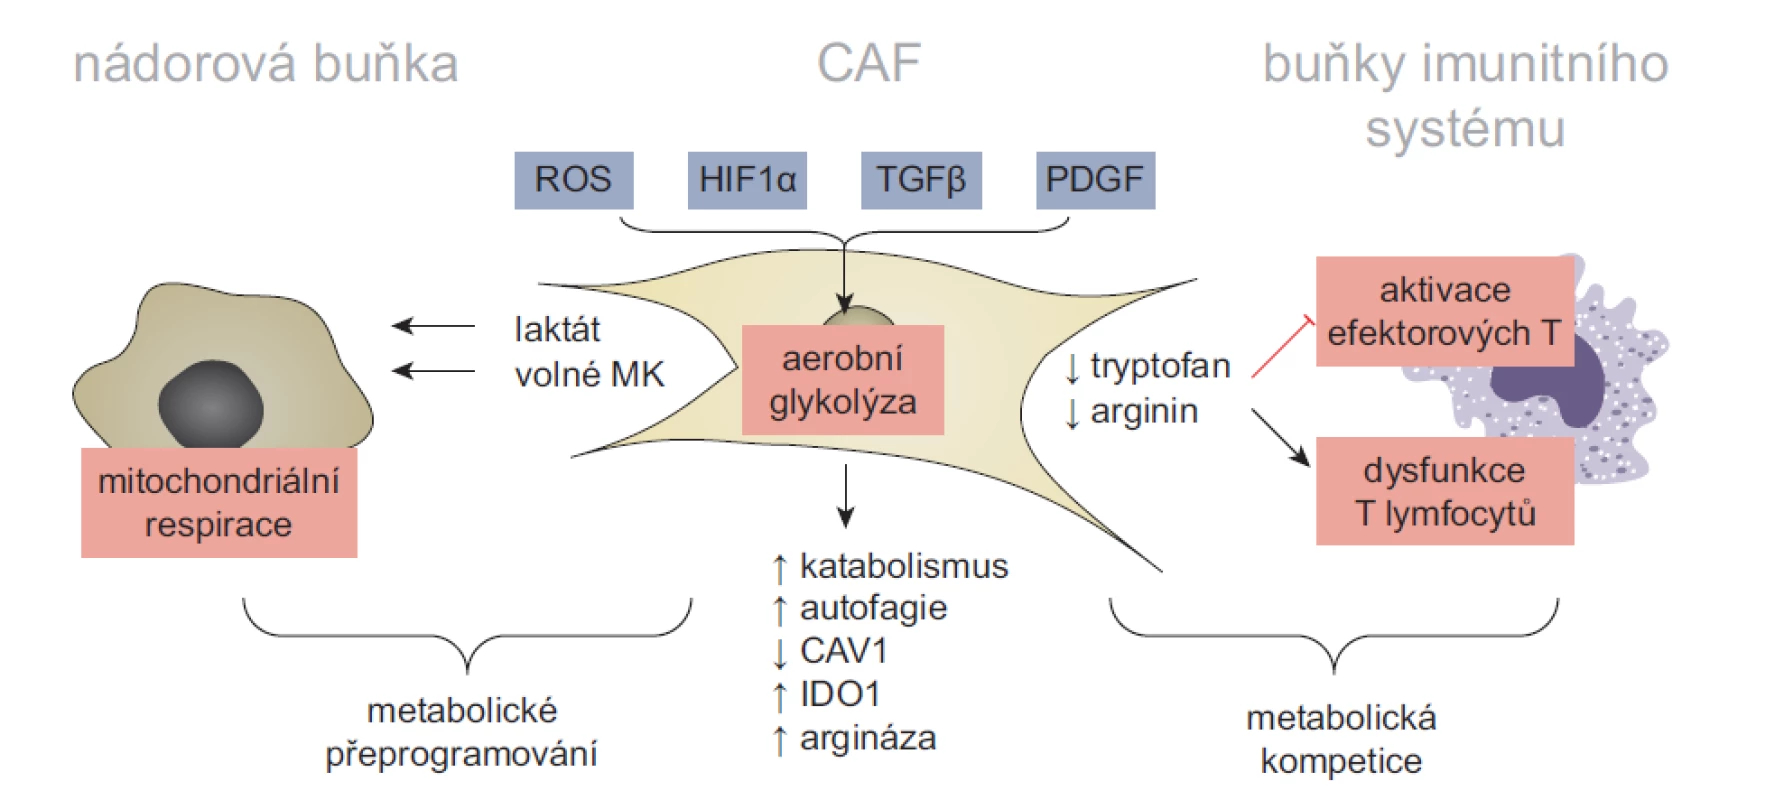 Model metabolické symbiózy a konkurence v nádorovém mikroprostředí. Aktivace CAF a udržení jejich sekrečního fenotypu je energeticky
náročné a vyžaduje metabolické změny. U některých typů CAF proto dochází k aktivaci aerobní glykolýzy. Zvýšená závislost CAF na aerobní
glykolýze může být vyvolána mnoha faktory – sníženou dostupností kyslíku v rostoucích nádorech, stabilizací faktoru HIF1α, aktivitou signálních drah
TGFβ a PDGF nebo ztrátou exprese CAV1, zprostředkovanou reaktivními kyslíkovými radikály. Zvýšená produkce laktátu, mastných kyselin a ketolátek
podporuje mitochondriální respiraci nádorových buněk. Zatímco metabolická symbióza mezi CAF a nádorovými buňkami stimuluje růst a maligní fenotyp
nádorových buněk, jejím vedlejším efektem je snížení dostupnosti klíčových metabolitů pro jiné složky TME. Tato metabolická konkurence následně
narušuje funkčnost protinádorové imunity. Například zvýšená exprese indolamin 2,3-dioxygenázy 1 a argináz (ARG1 a ARG2) v CAF radikálně
snižuje dostupnost tryptofanu a argininu v TME, čímž inhibuje proliferaci a aktivaci efektorových T lymfocytů. Volně přepracováno dle [7].